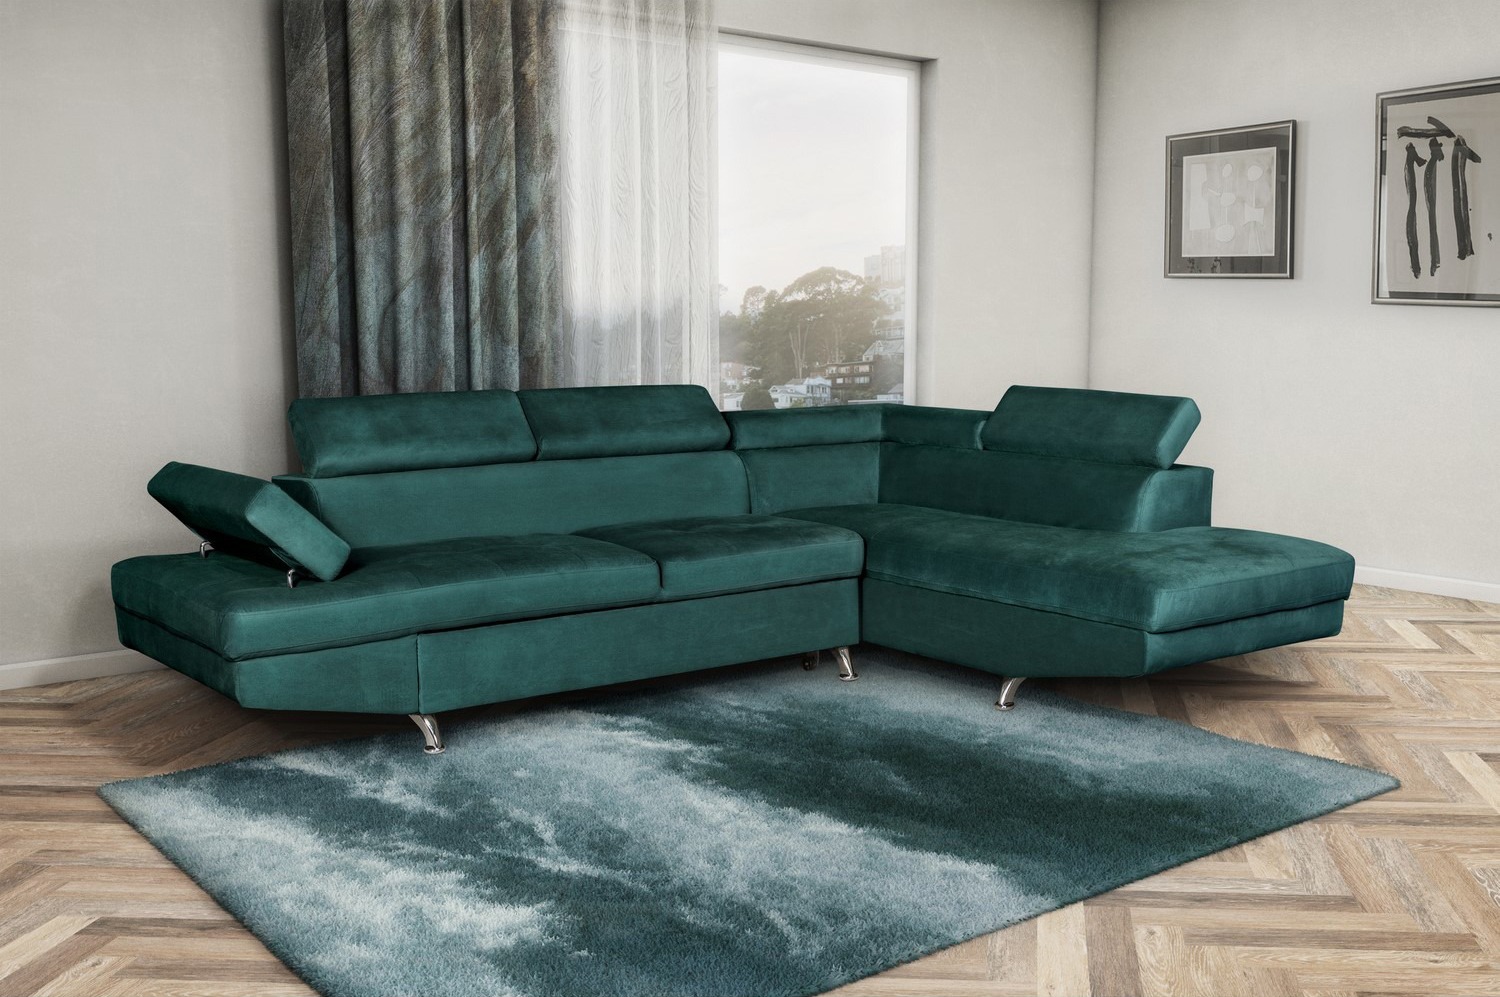 Canapea coltar - extensibila, pozitionare stanga, verde, moderna